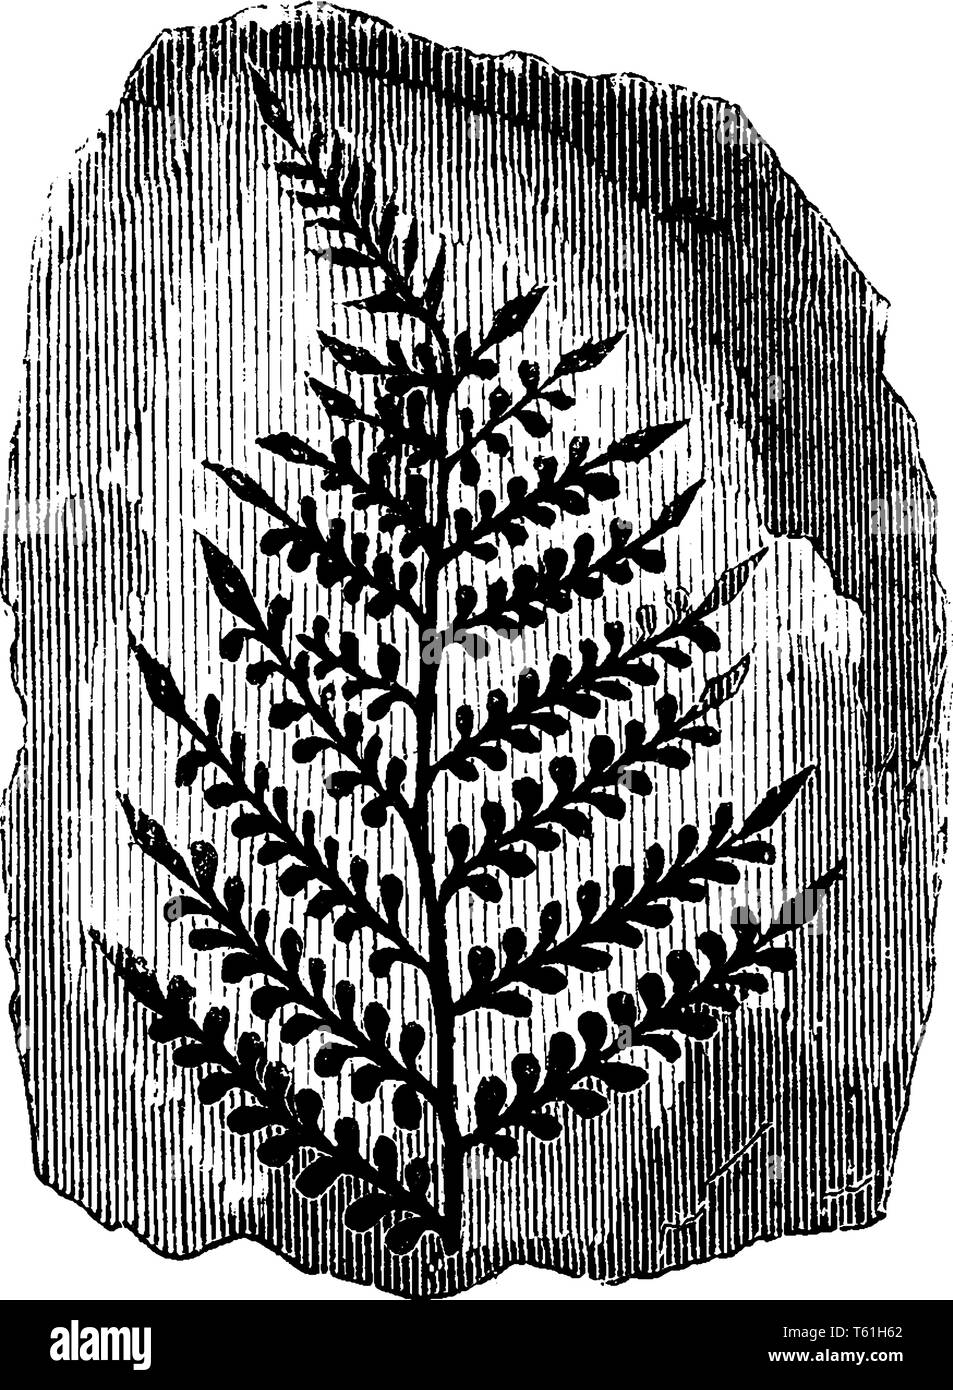 Das Bild zeigt die versteinerte Kohle Farne der alten Baum, der häufig mit kohleflöze, vintage Strichzeichnung oder Gravur illustratio Stock Vektor